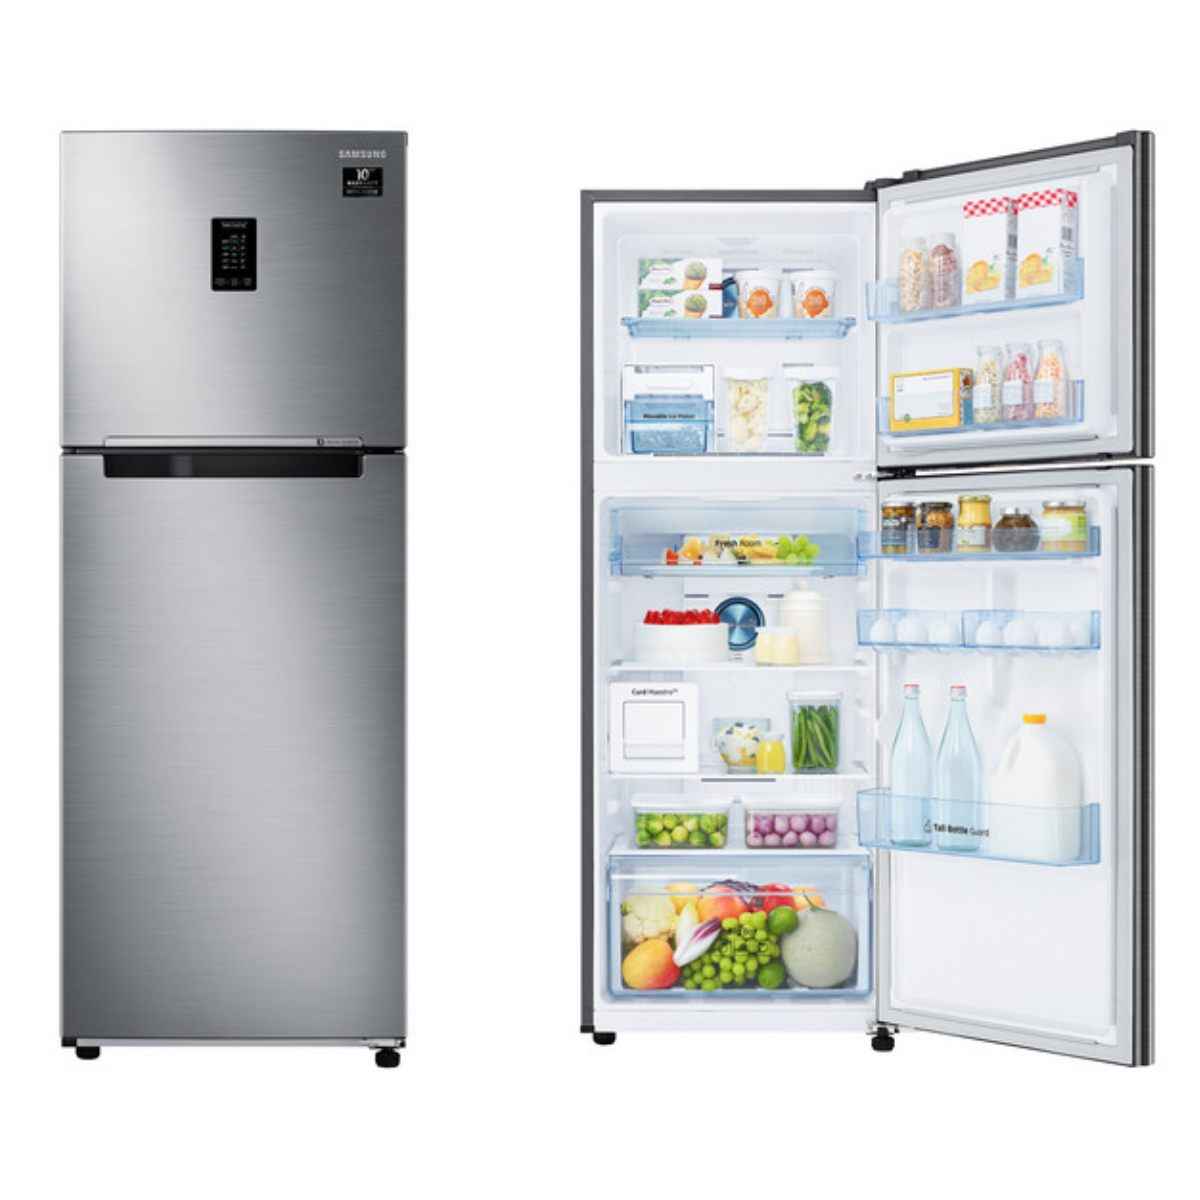 Samsung 386L 2 Star Curd Mastro Refrigerator